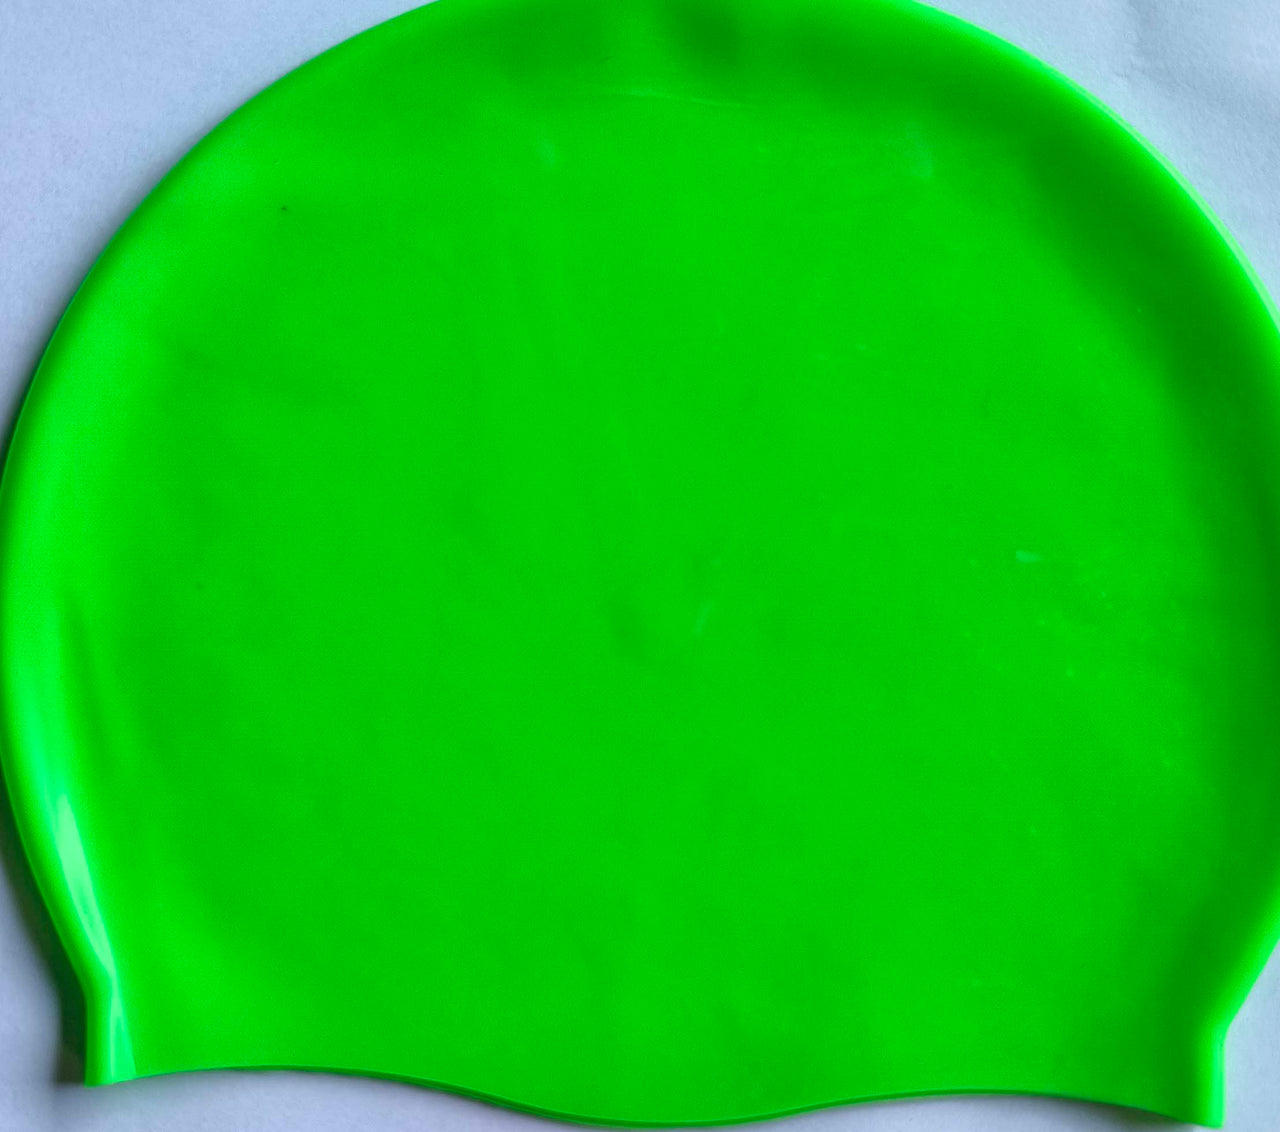 TAS Neon Silicone Caps - Neon Green